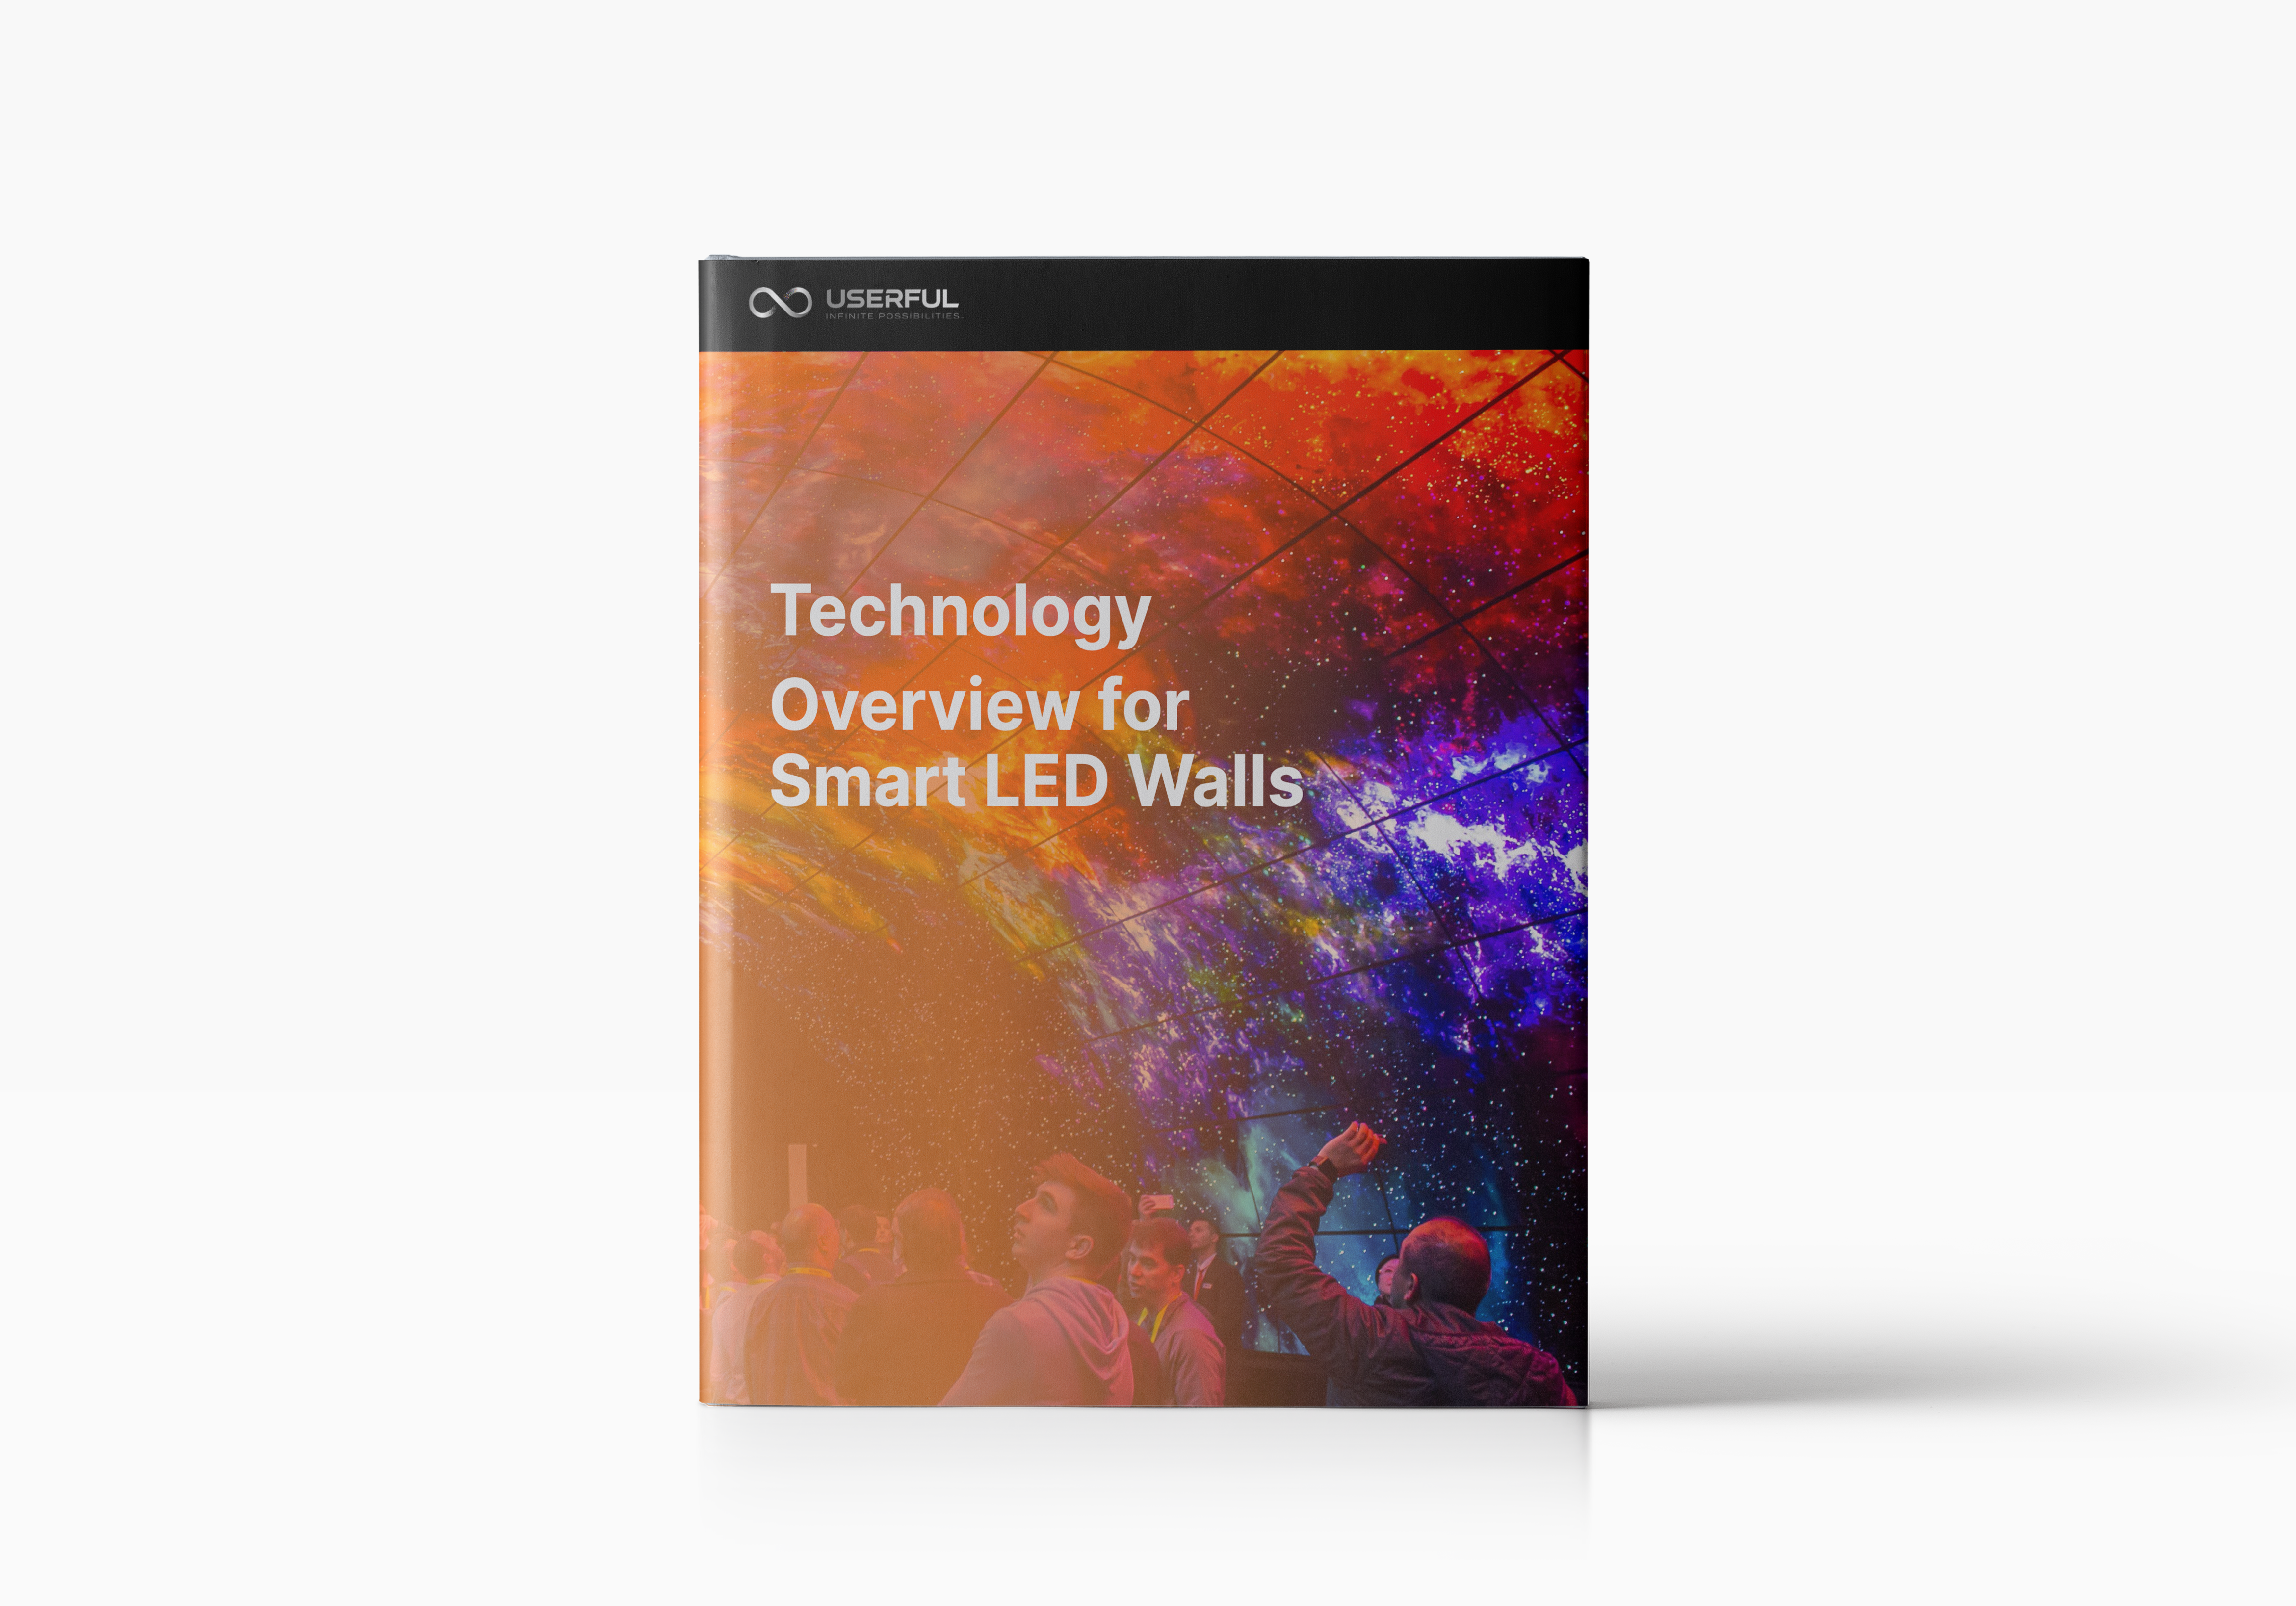 Aperçu technologique de l'Ebook Userful sur les murs LED intelligents